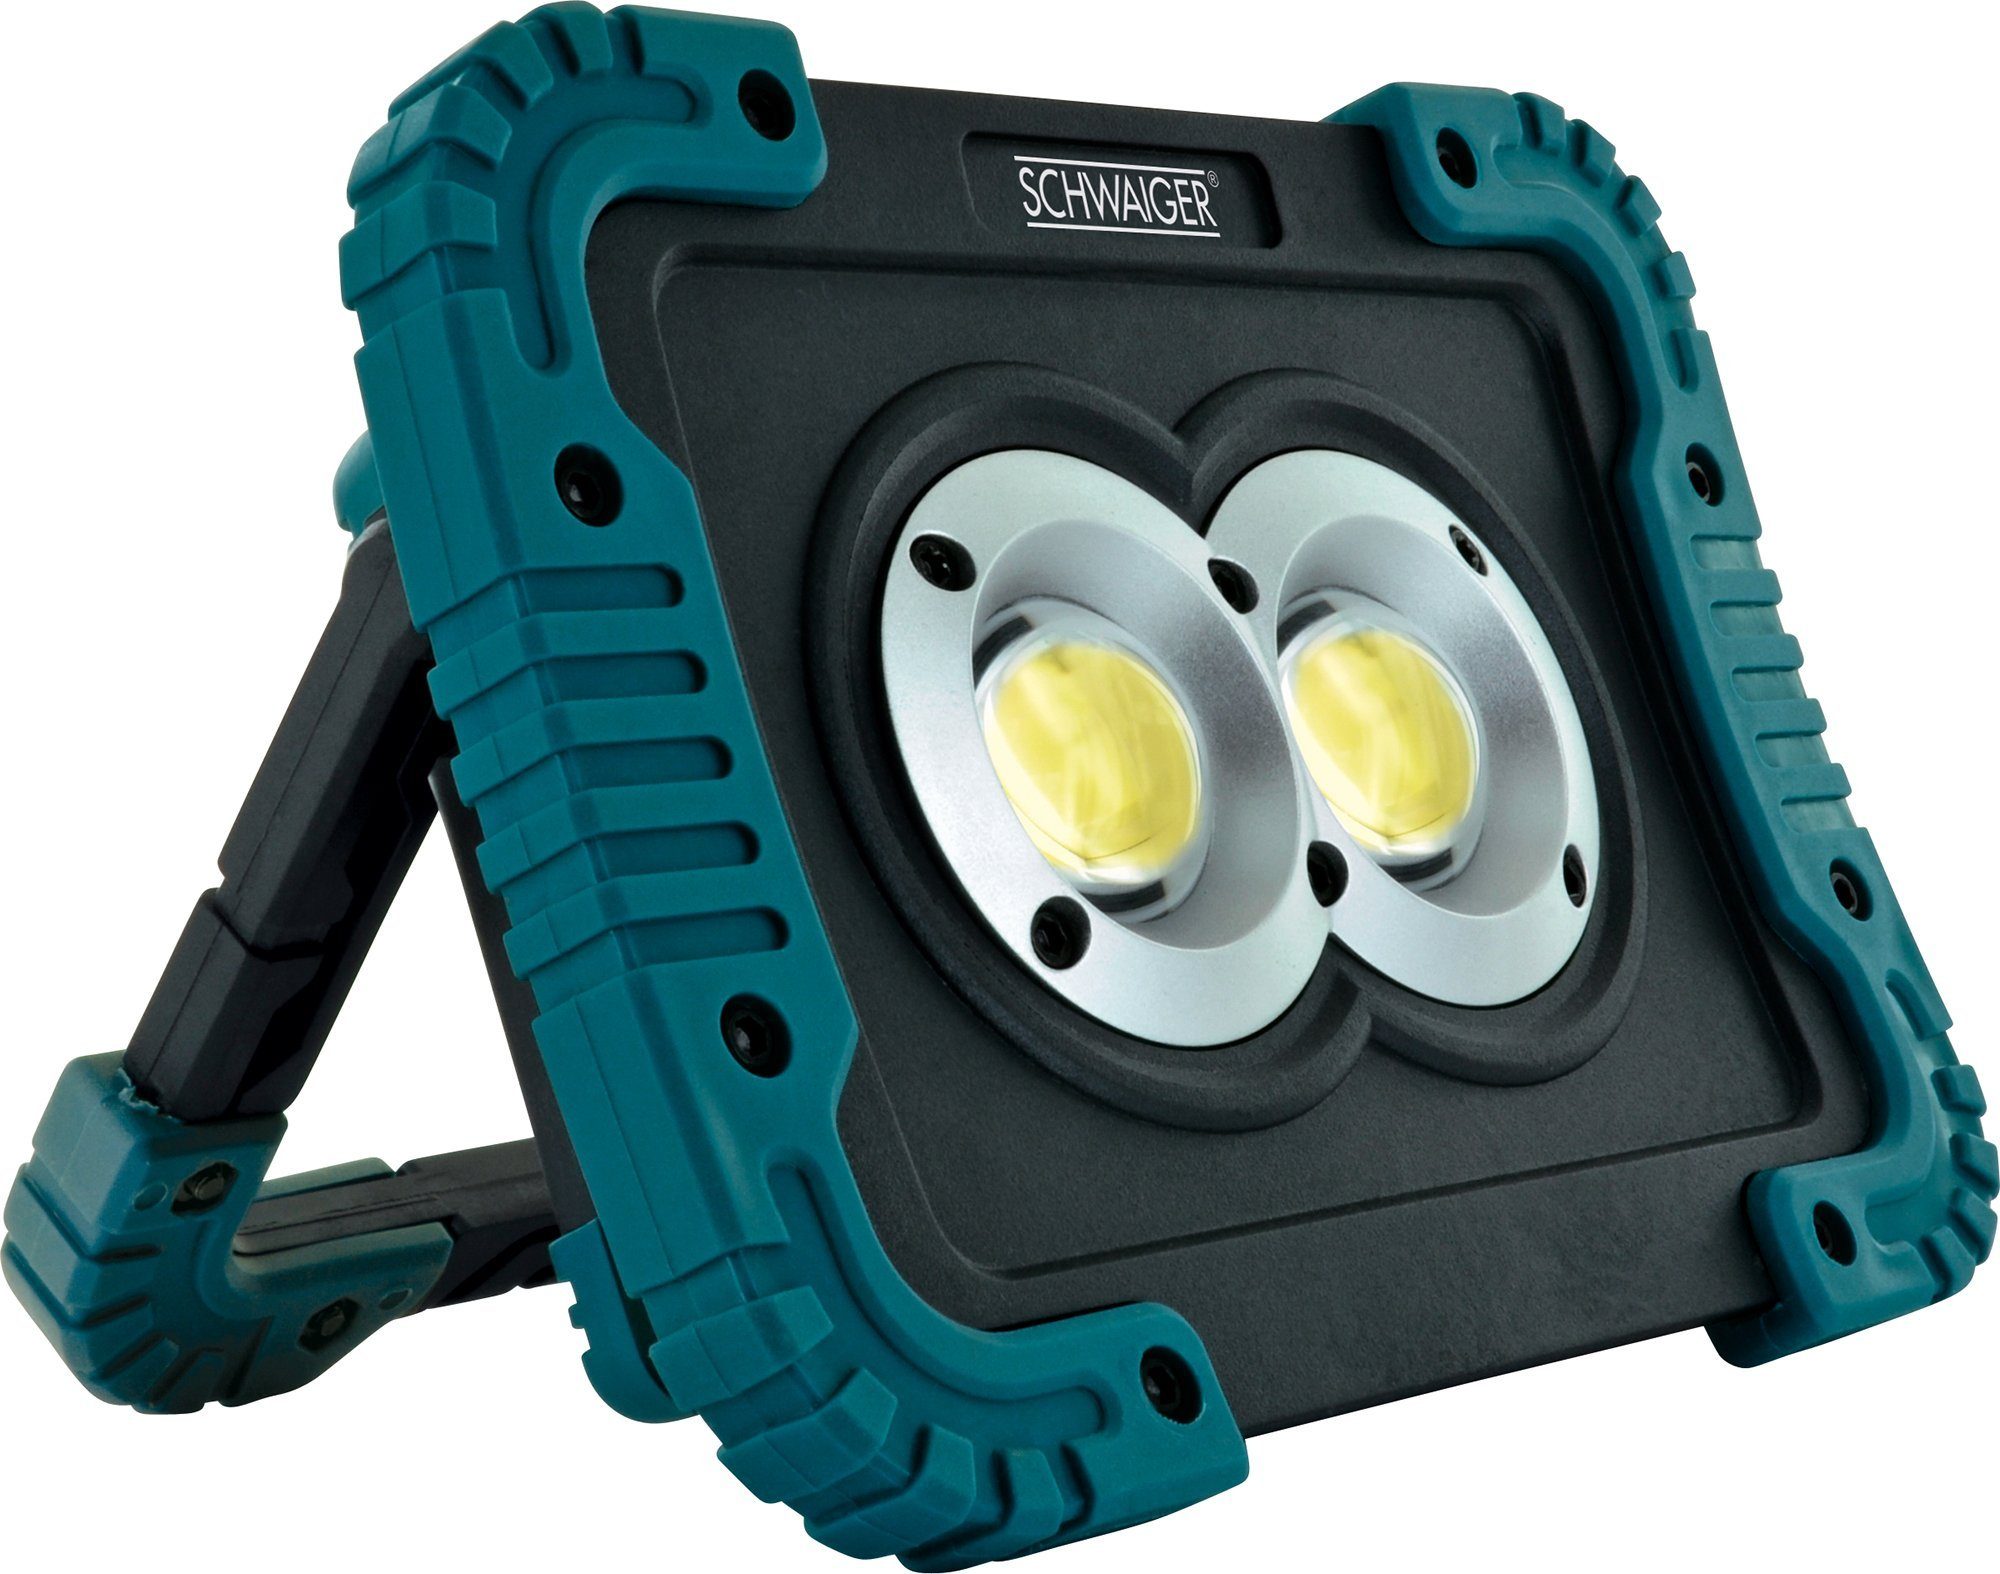 Schwaiger LED Arbeitsleuchte WLED210, rotierbarer 180° IPX4, Weiß, 3 COB-LED, Lichtmodi Leuchtmodi Standfuß, einstellbar, 3